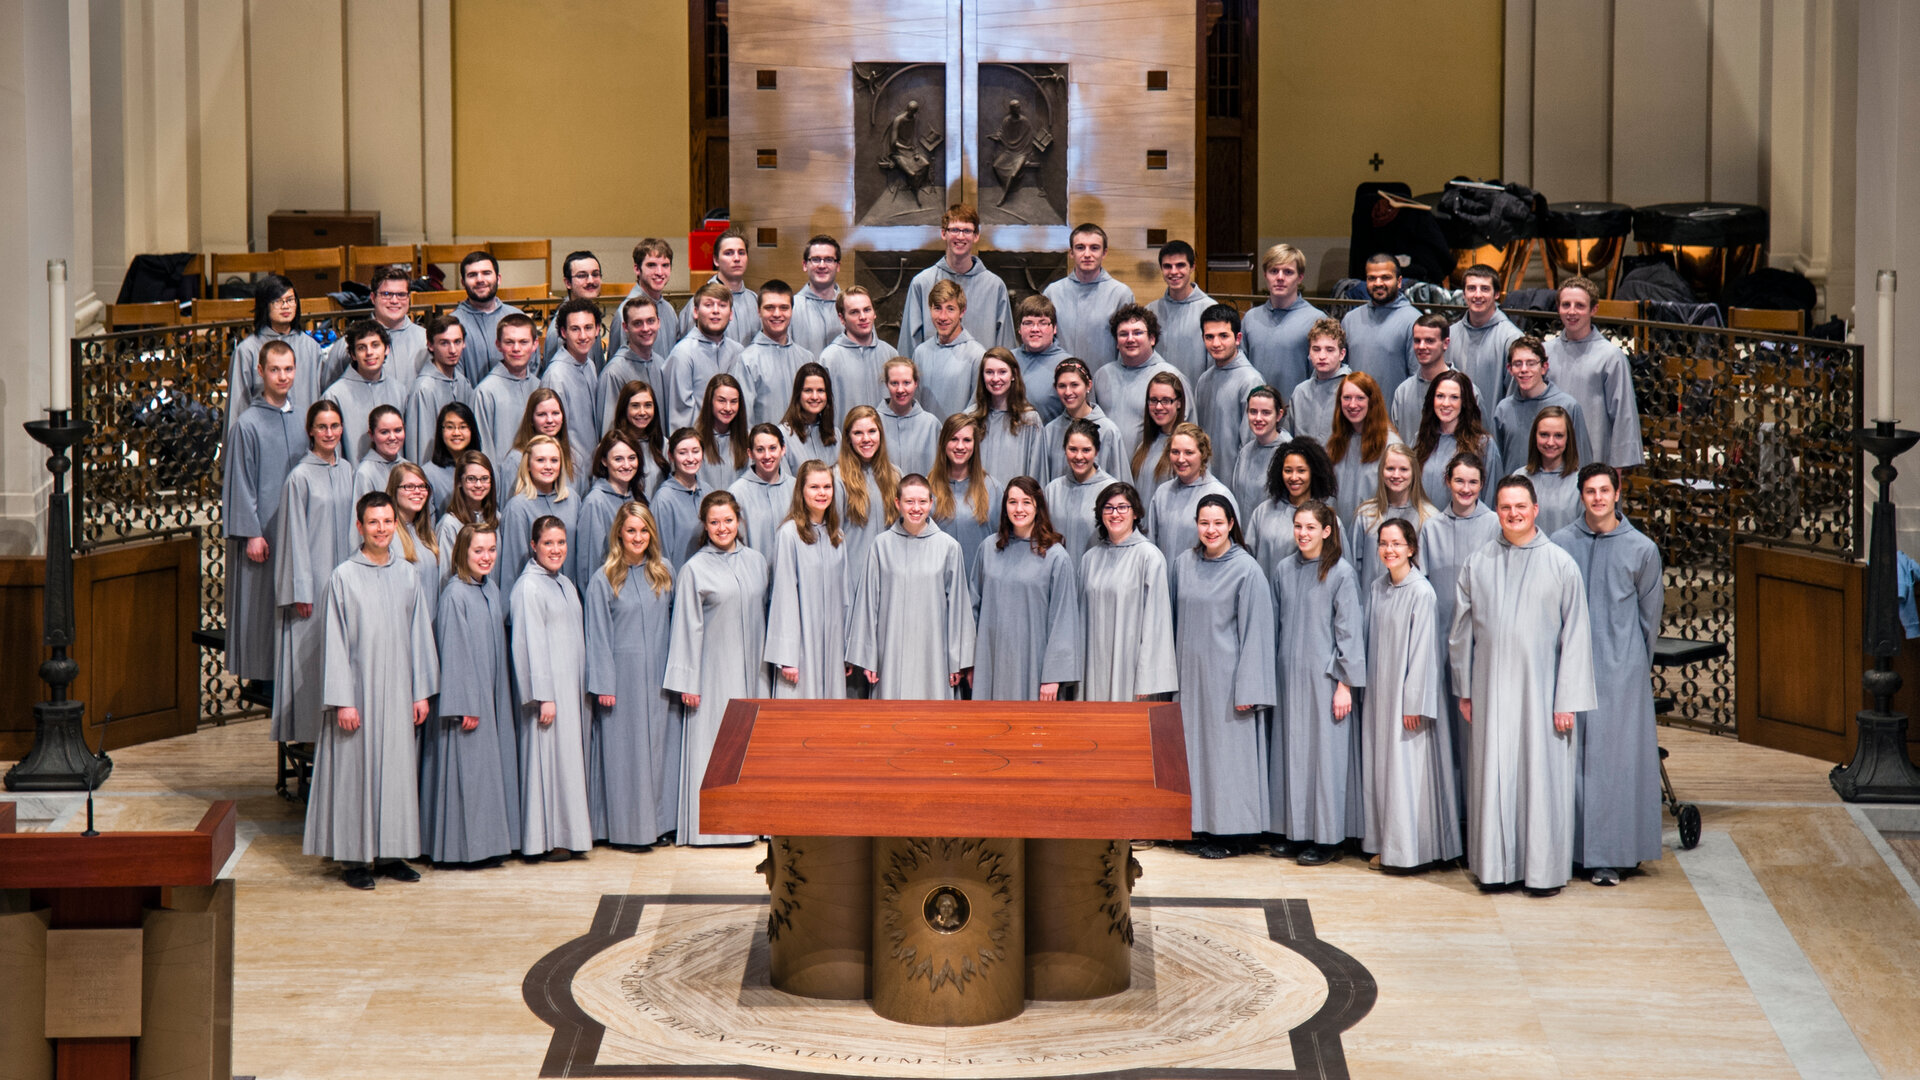 liturgical choir performs